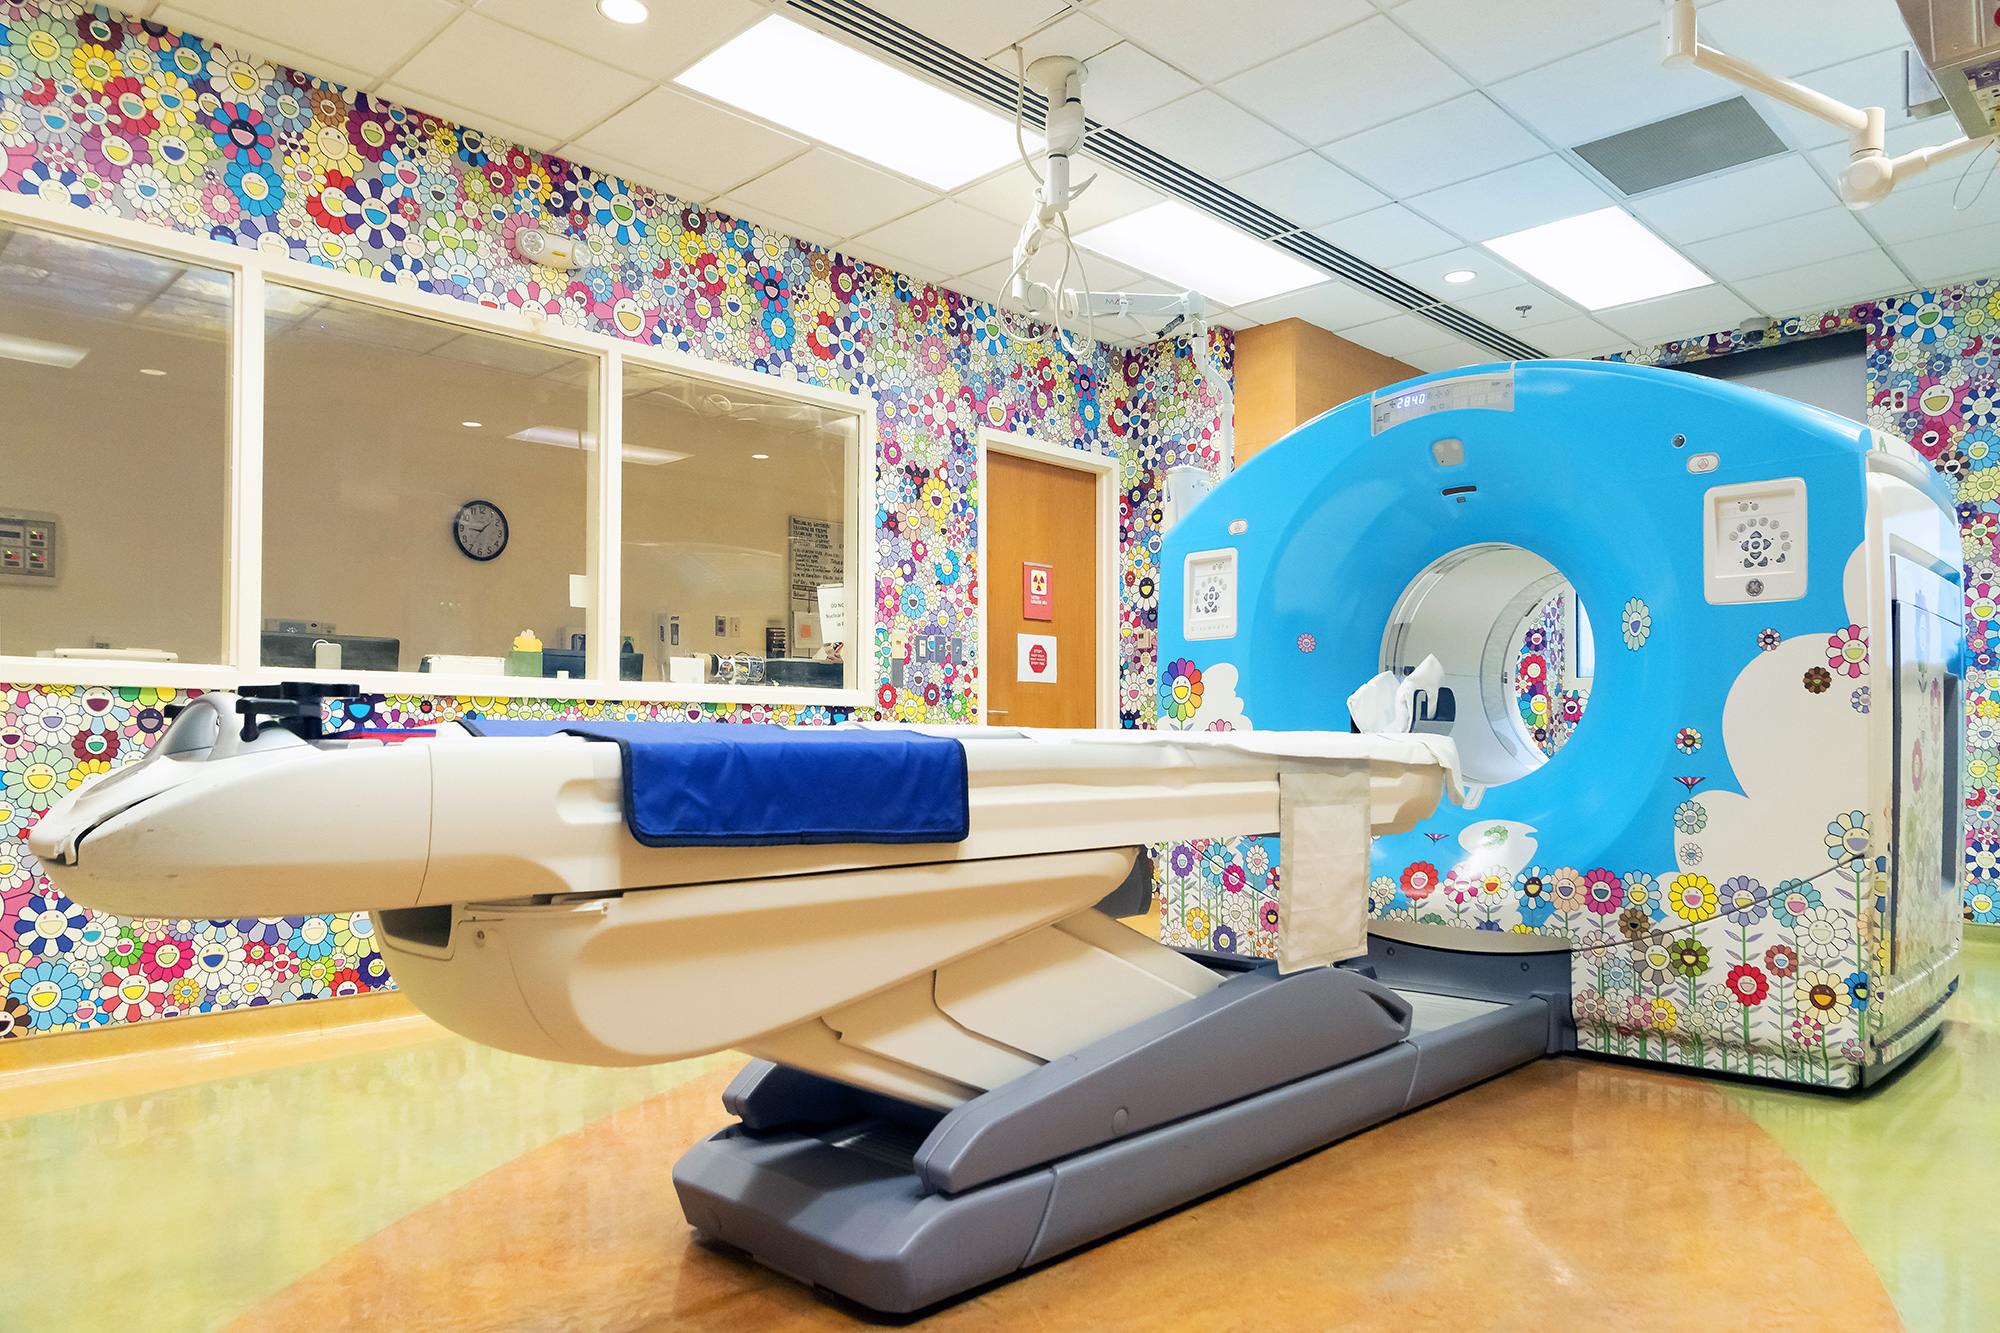 Takashi Murakami intervino la sala de tomografía infantil RX hospital de niños de Washington